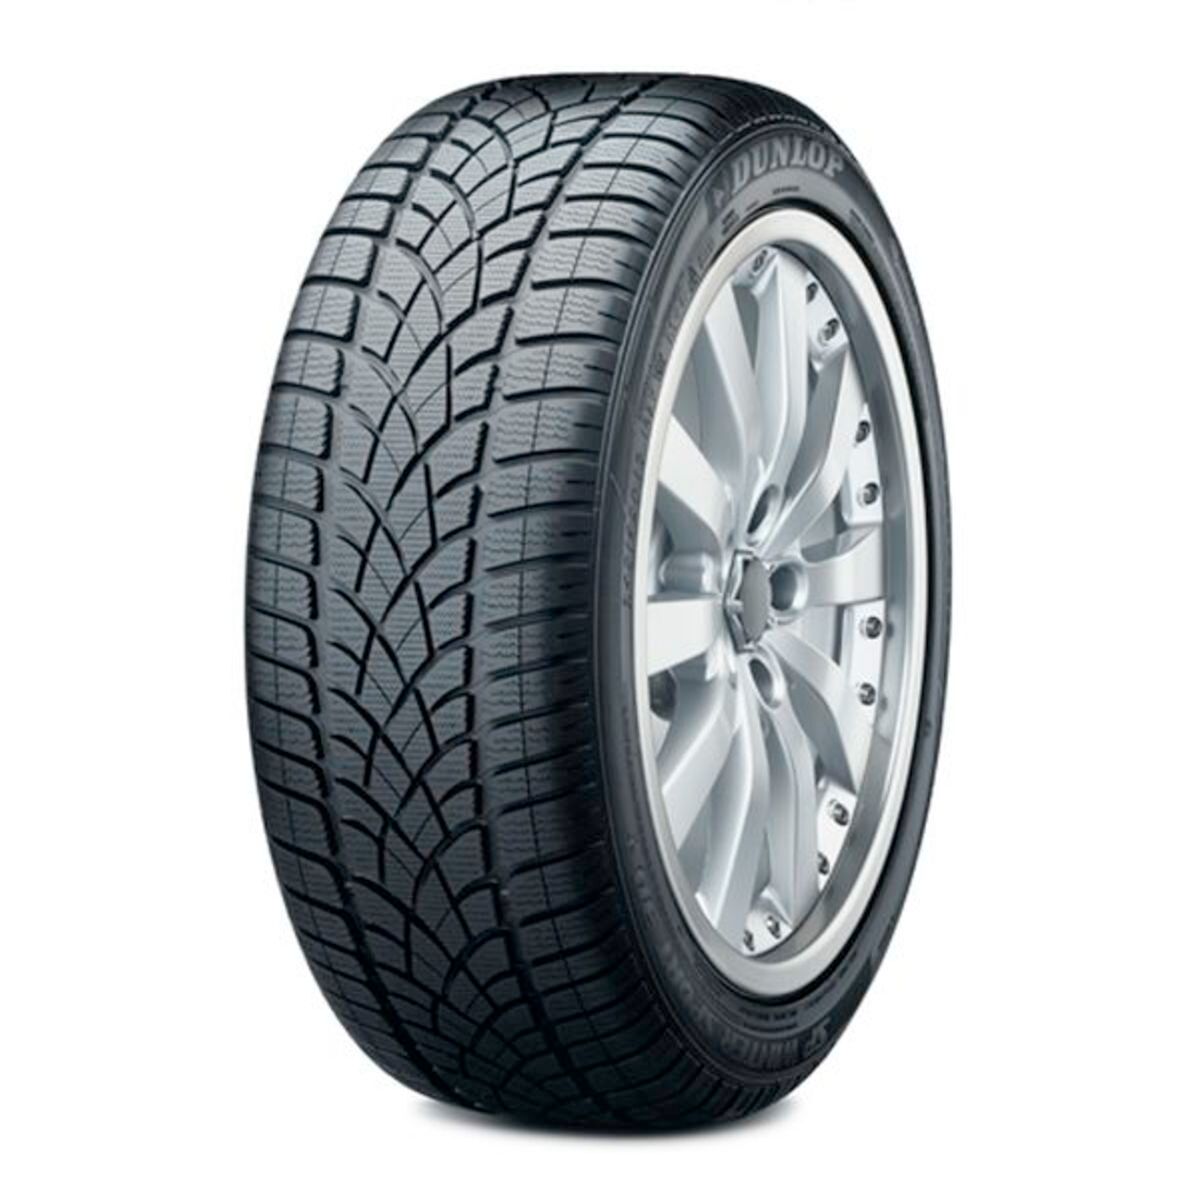 Neumáticos de invierno DUNLOP SP Winter Sport 3D 225/50R18 XL 99H